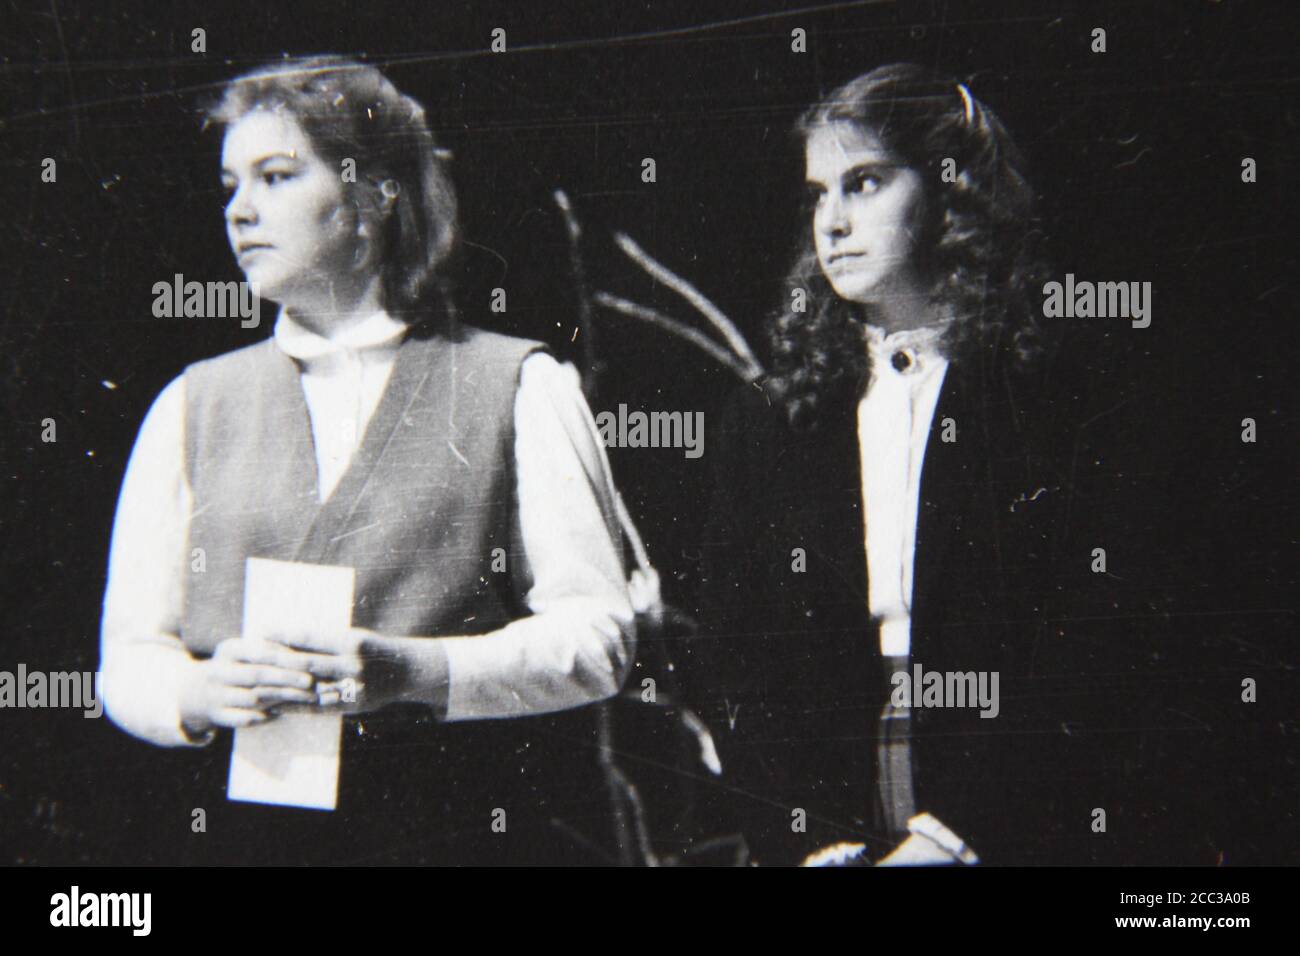 Feine Schwarz-Weiß-Fotografie aus den 1970er Jahren von Menschen, die während einer Preisverleihung auf der Bühne stehen. Stockfoto